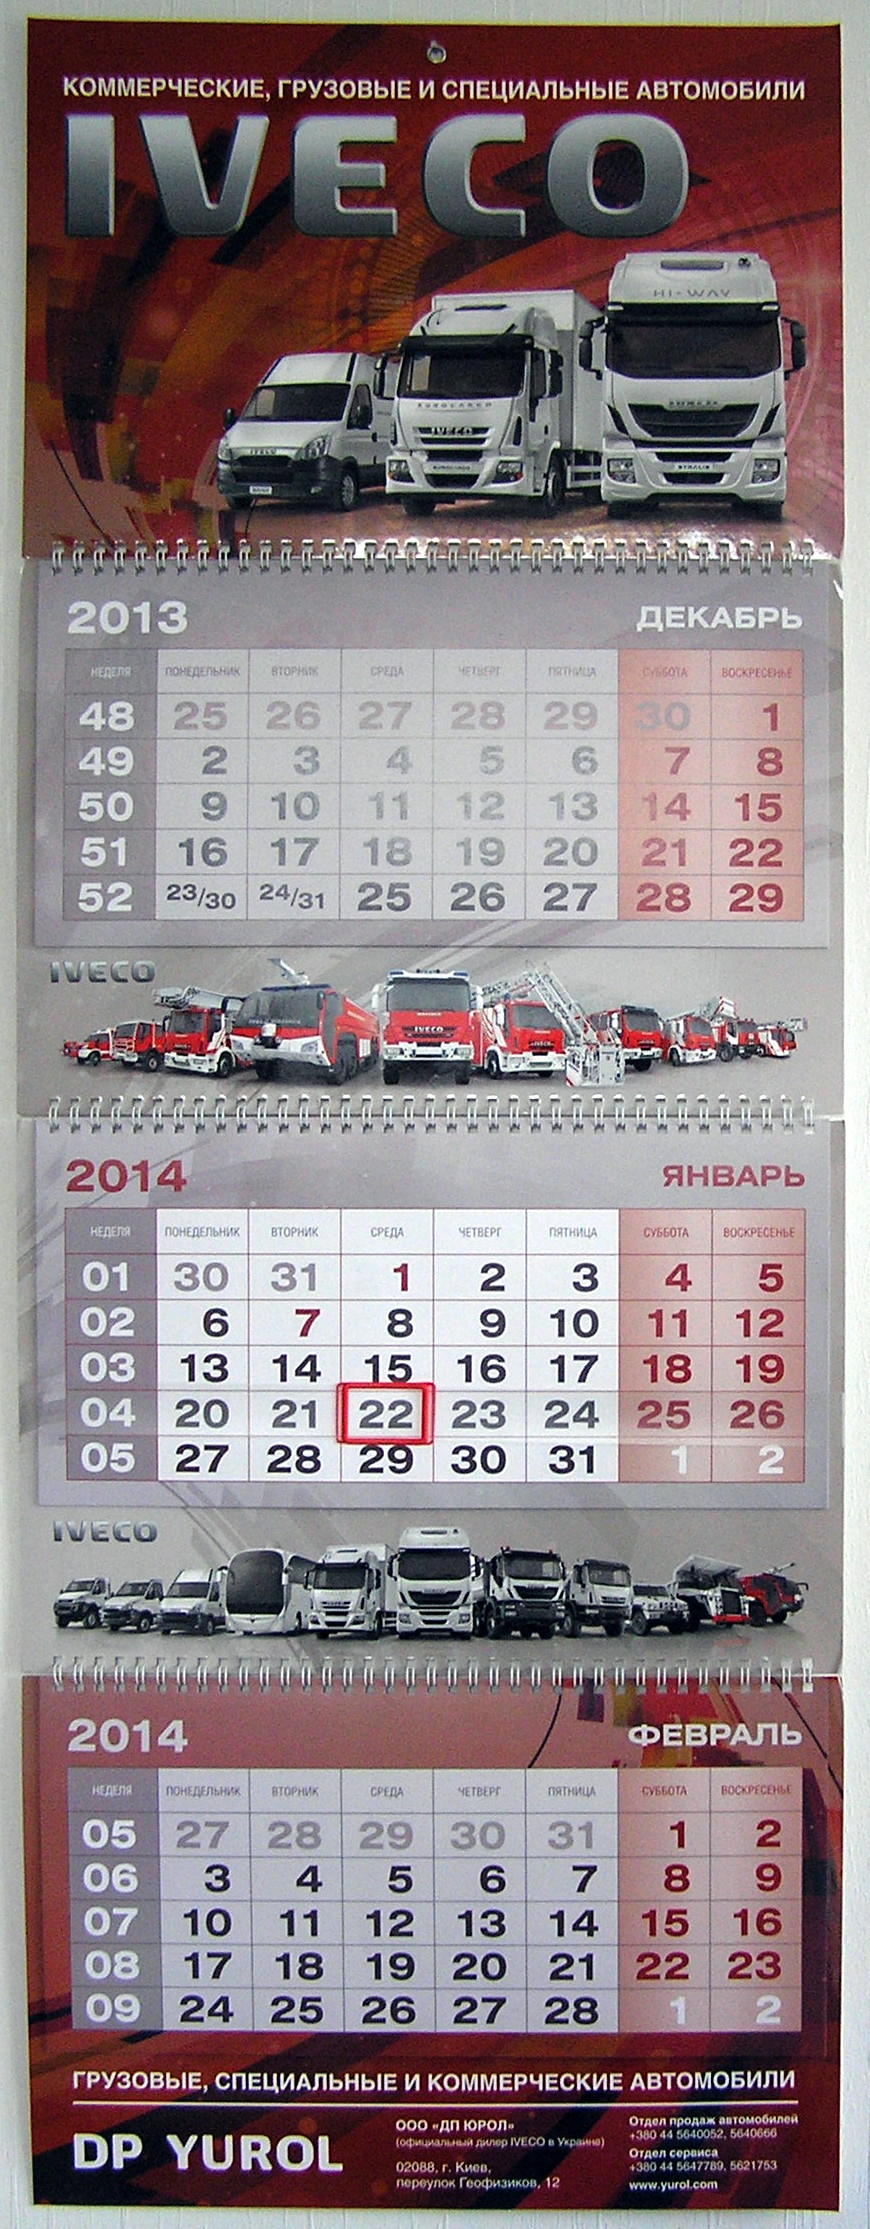 Друк квартальних календарів «Iveco». Поліграфія друкарні Макрос, виготовлення квартальних календарів, спецификация 966993-1